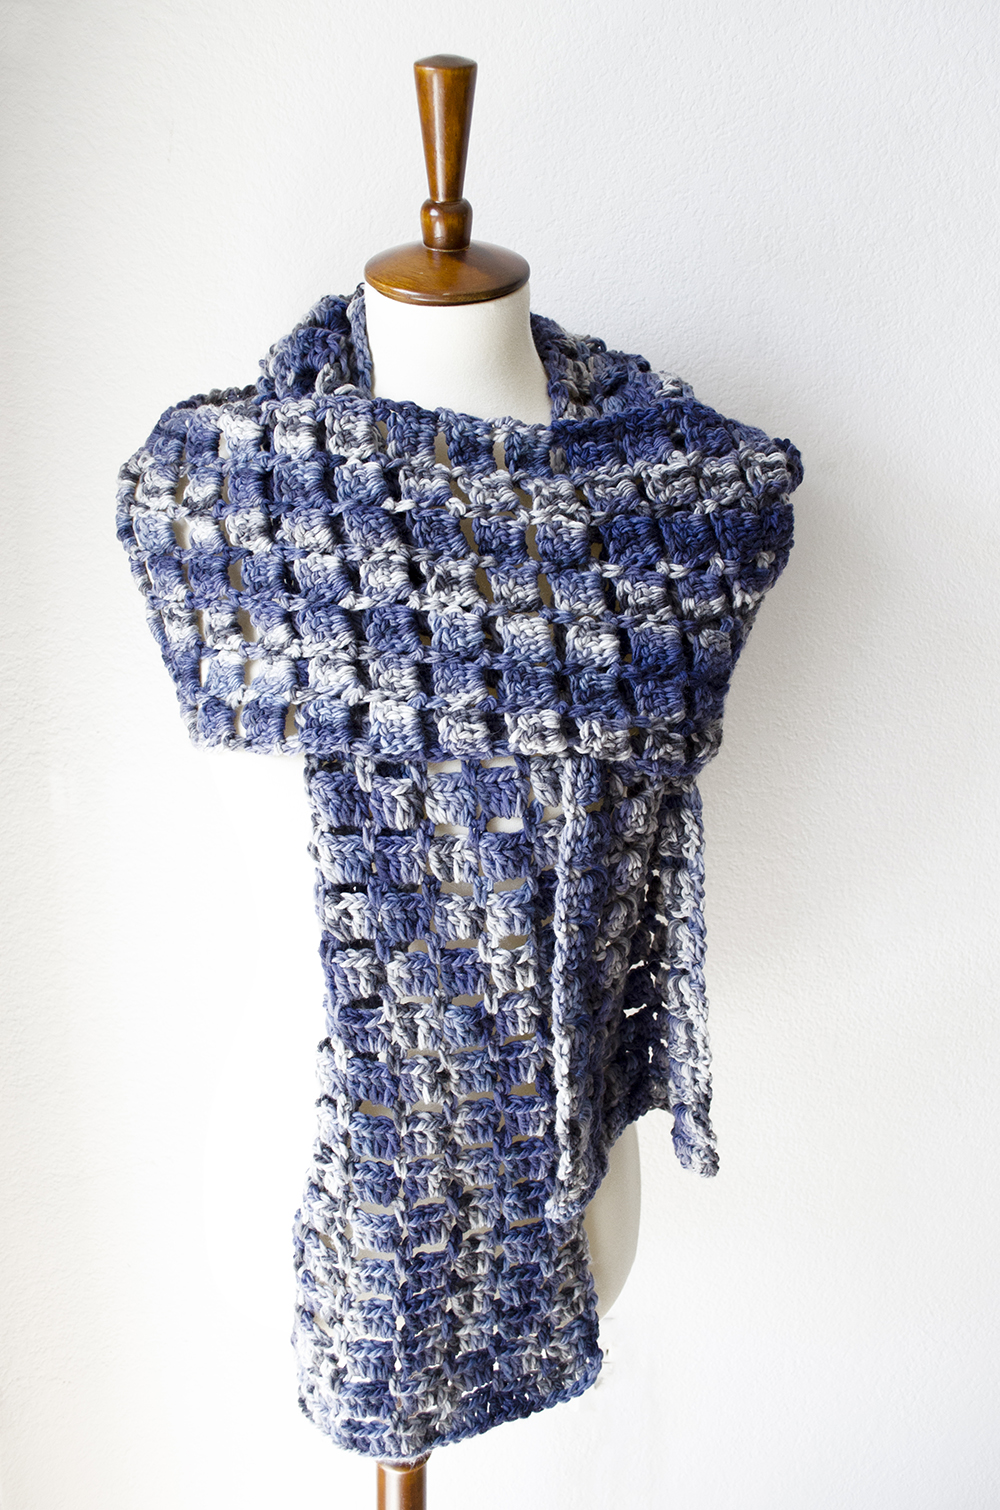 Super Scarf Crochet Pattern